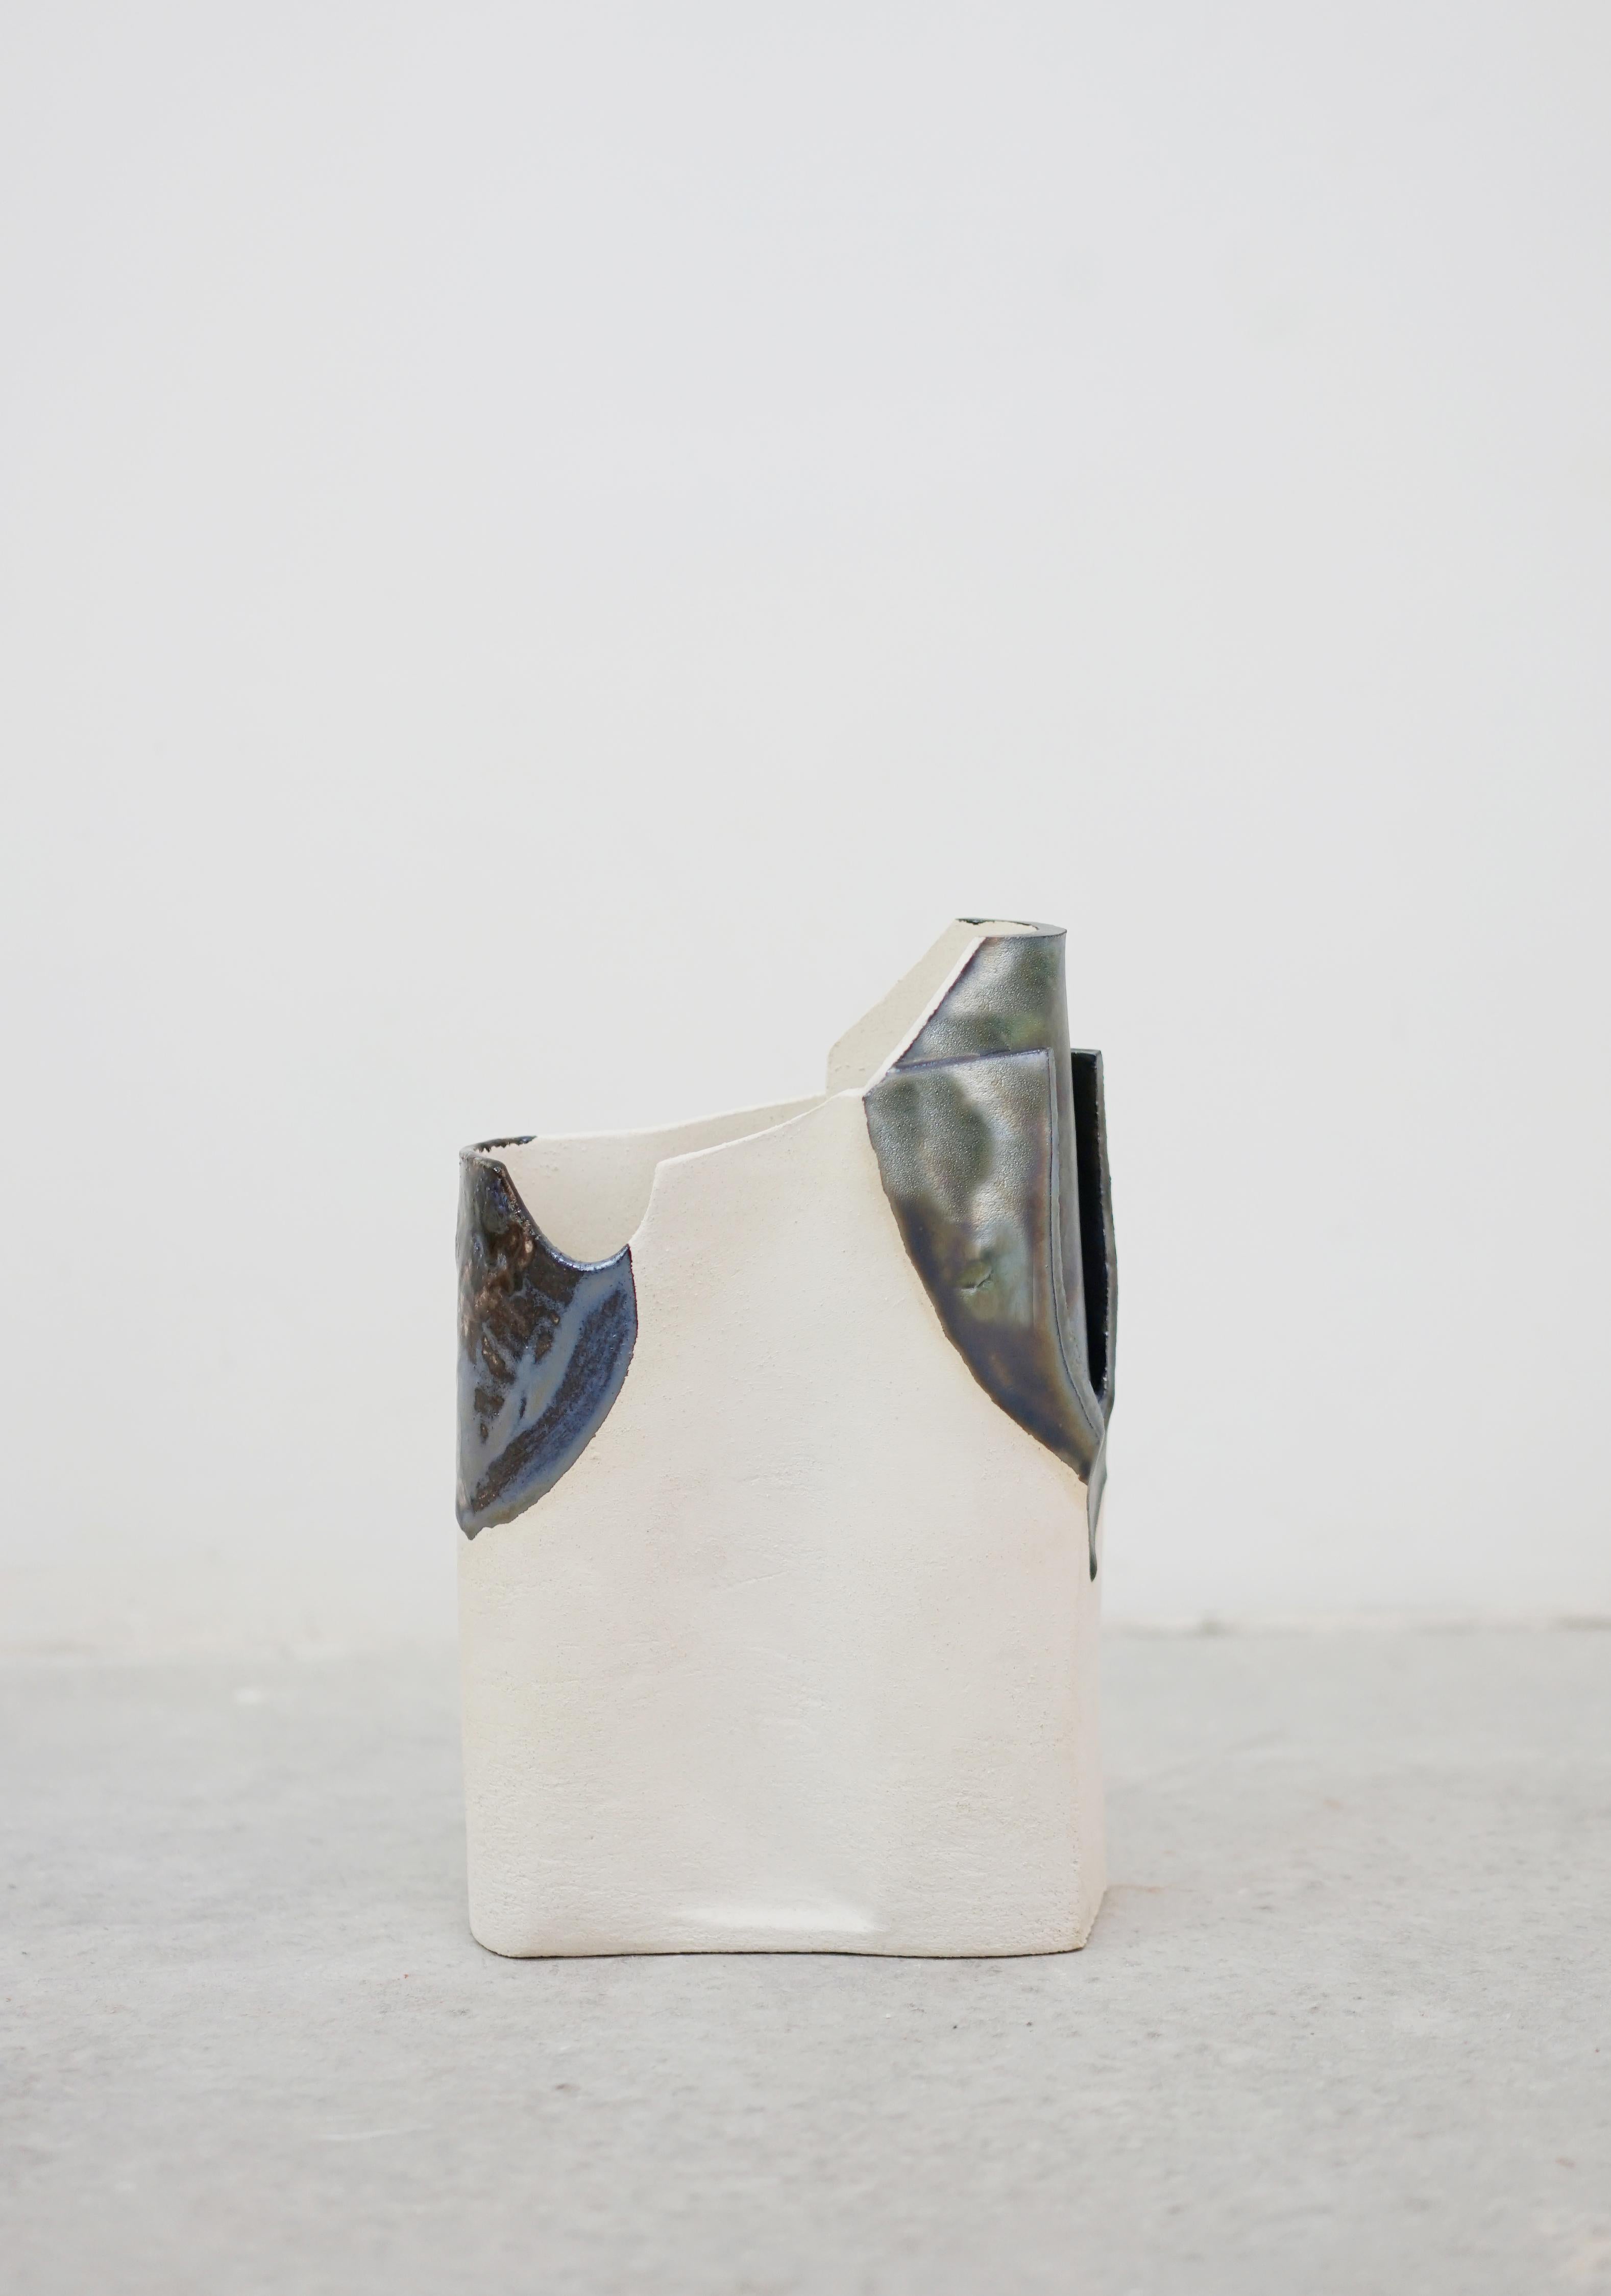 Vase unique HYDRA_DOKI_02 d'Emmanuelle Roule
Pièce unique
Dimensions : L 22 x H 30 cm
Matériaux : Grès cérame

Vase en grès blanc, partiellement émaillé avec des reflets à effet. Non étanche.

Studio de création fondé en 2007 à Paris.
Curieux de